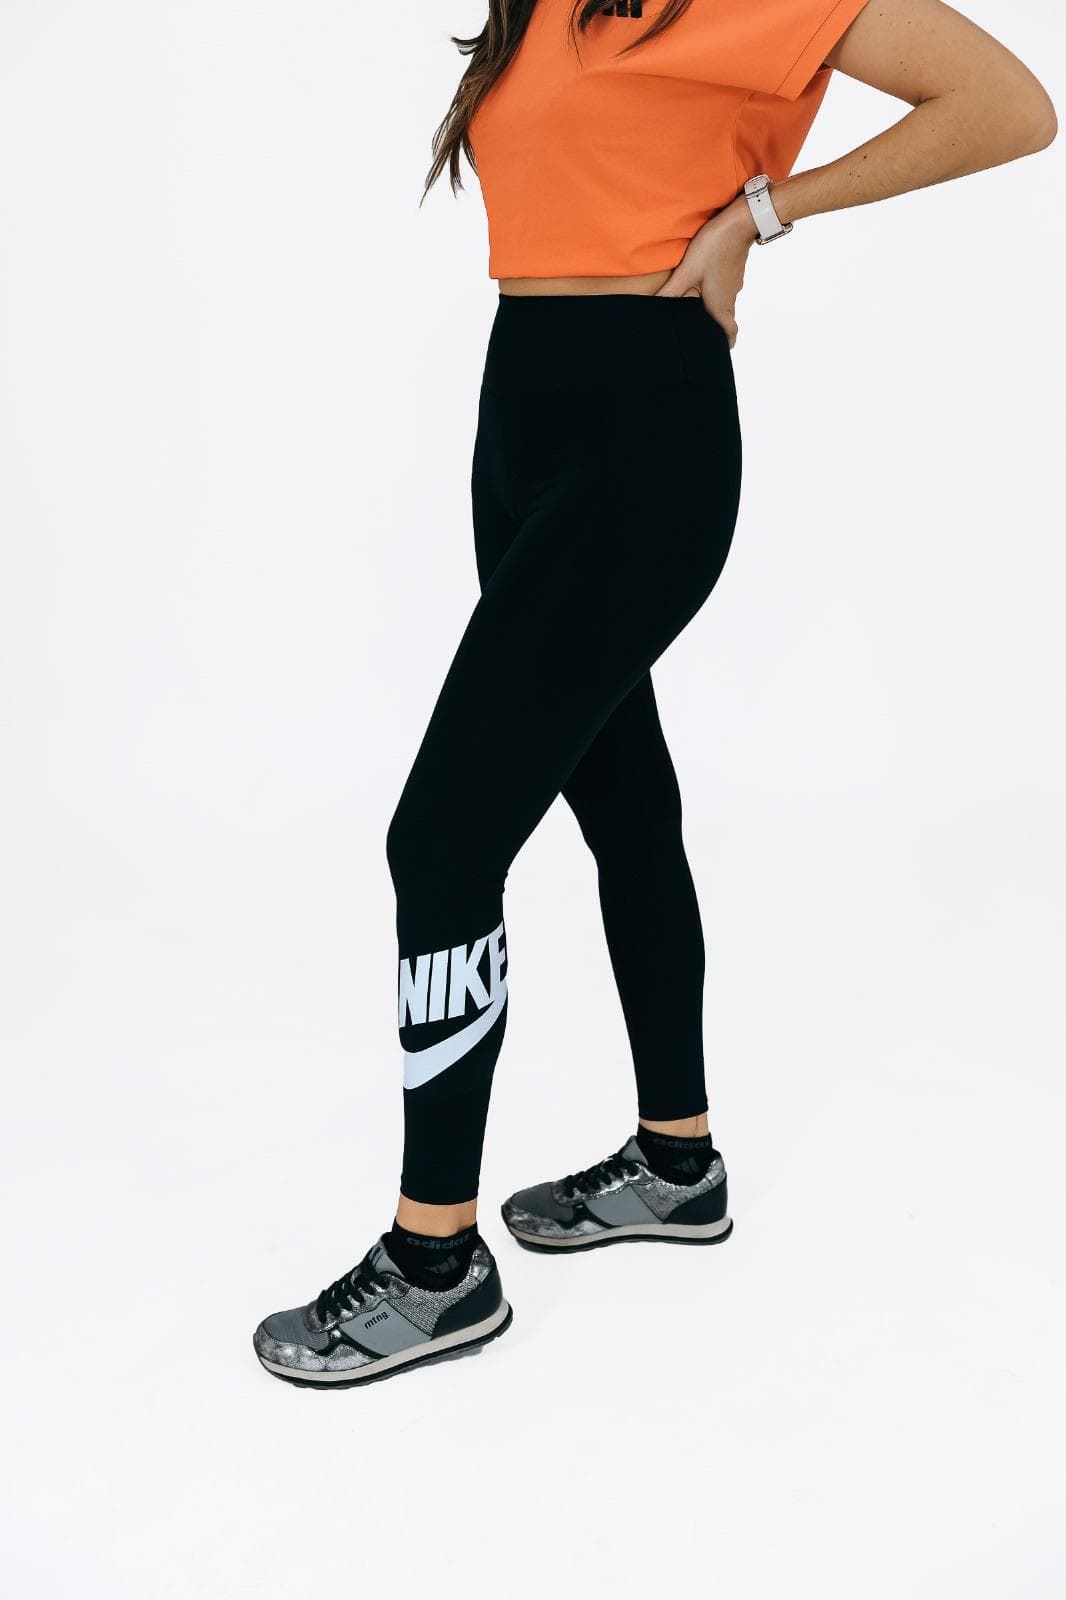 Leggins mujer Nike - Imagen 1